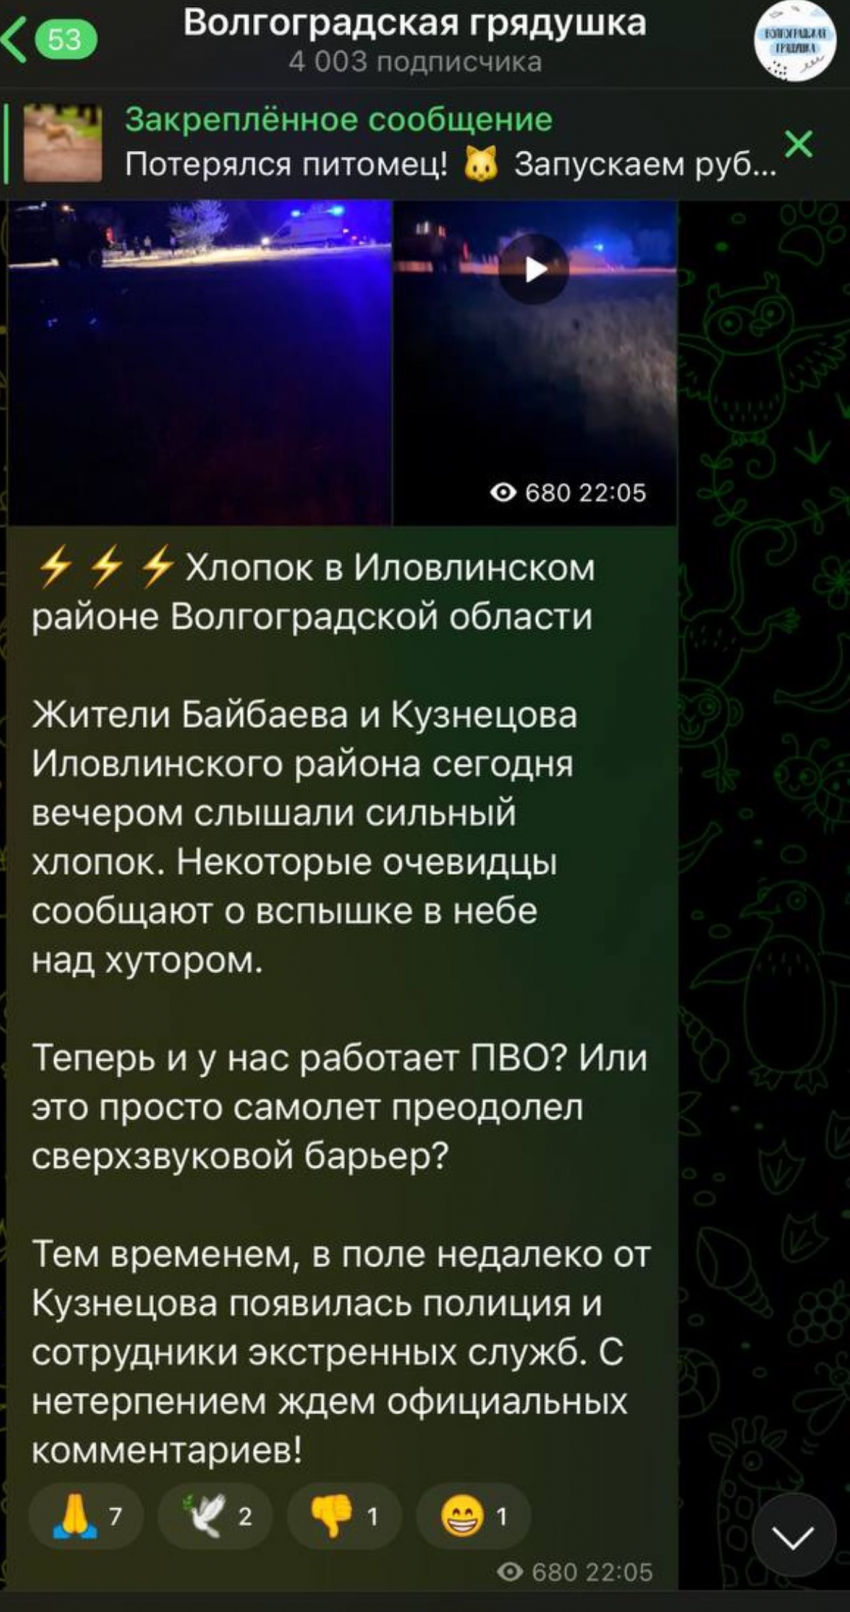 Экстренные службы собрались в поле в Волгоградской области после звука и вспышки в небе, сообщают телеграм-каналы